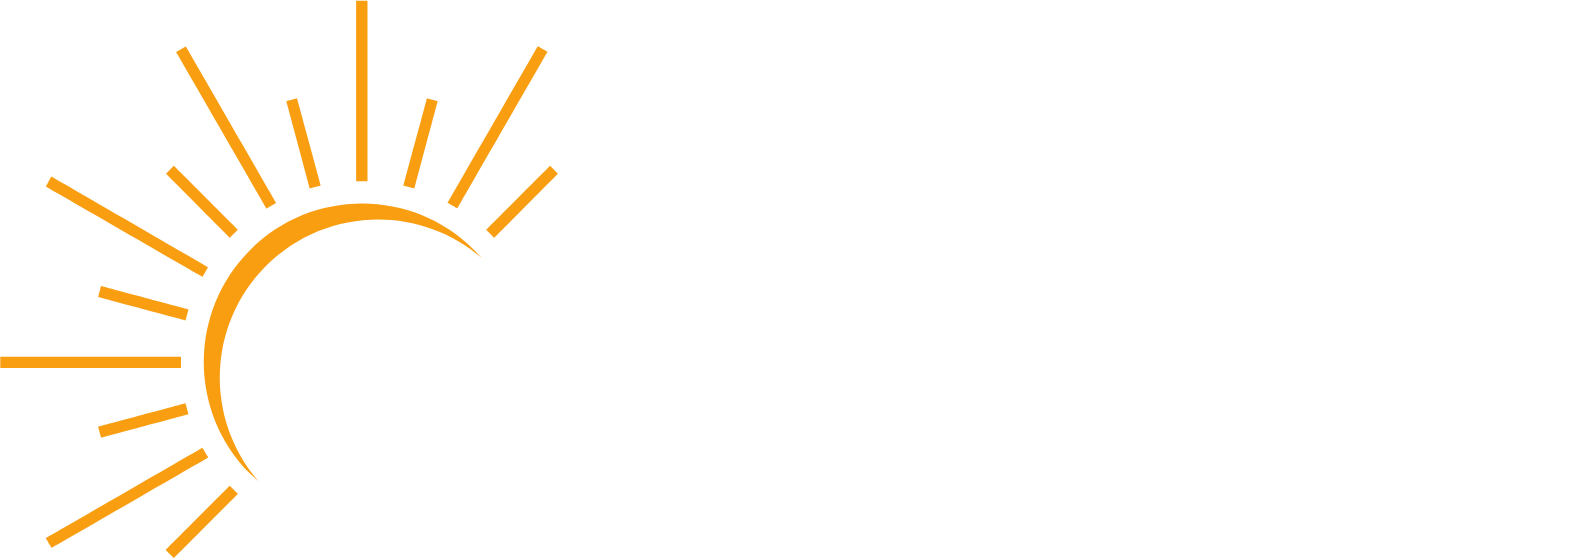 Azure Power
 logo grand pour les fonds sombres (PNG transparent)